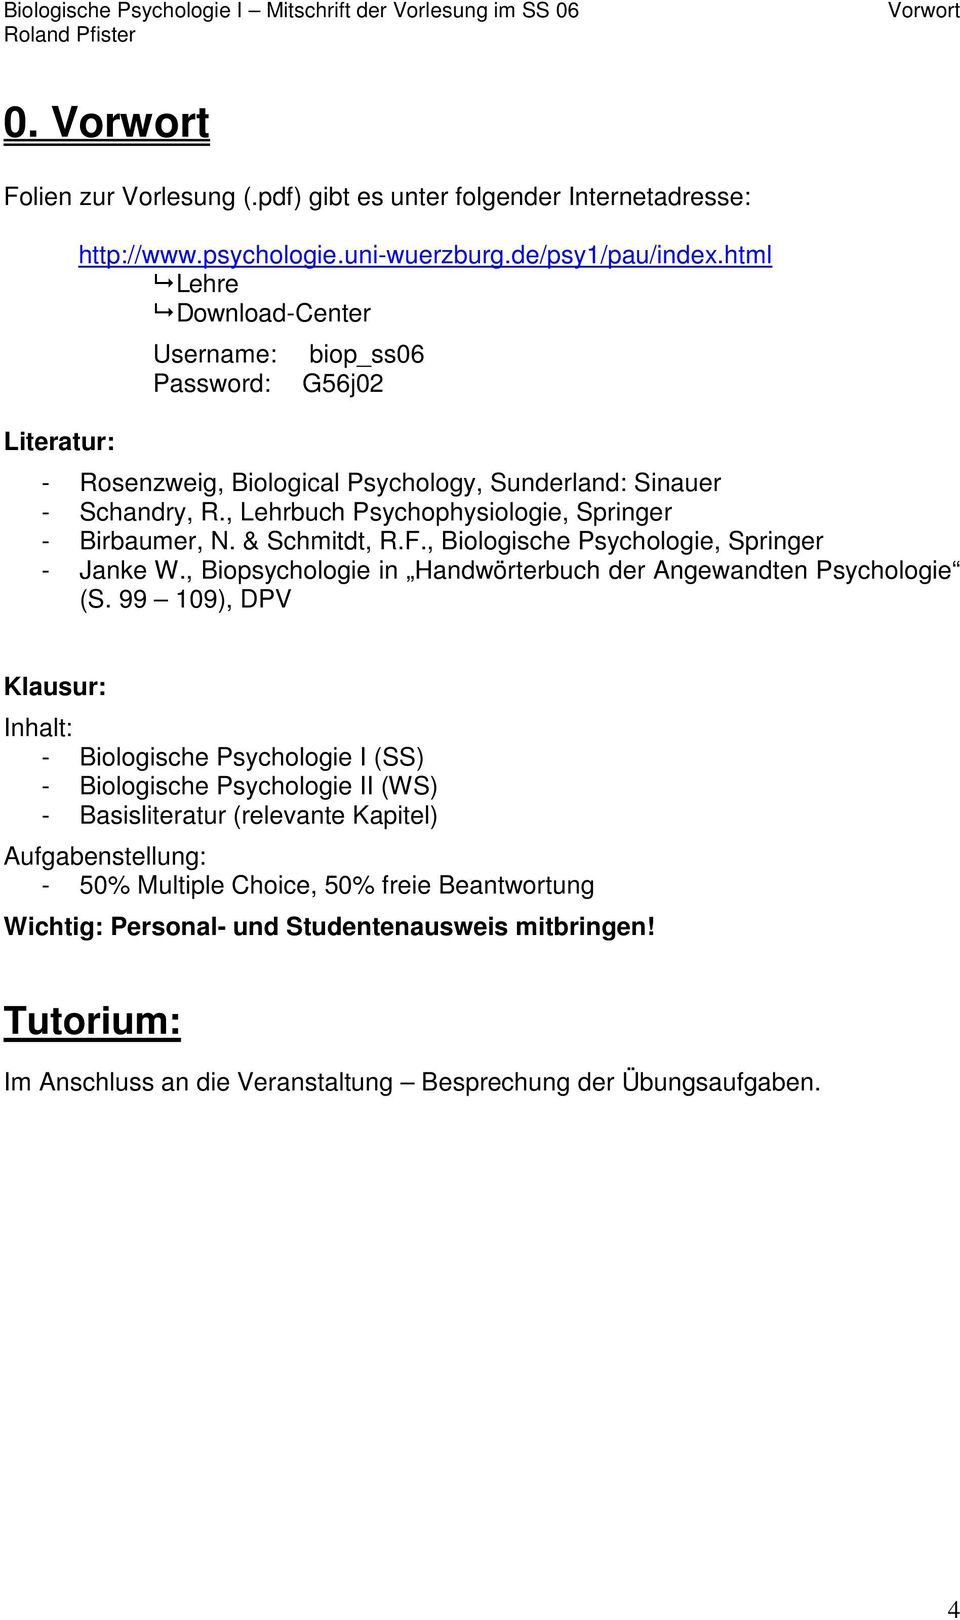 & Schmitdt, R.F., Biologische Psychologie, Springer - Janke W., Biopsychologie in Handwörterbuch der Angewandten Psychologie (S.